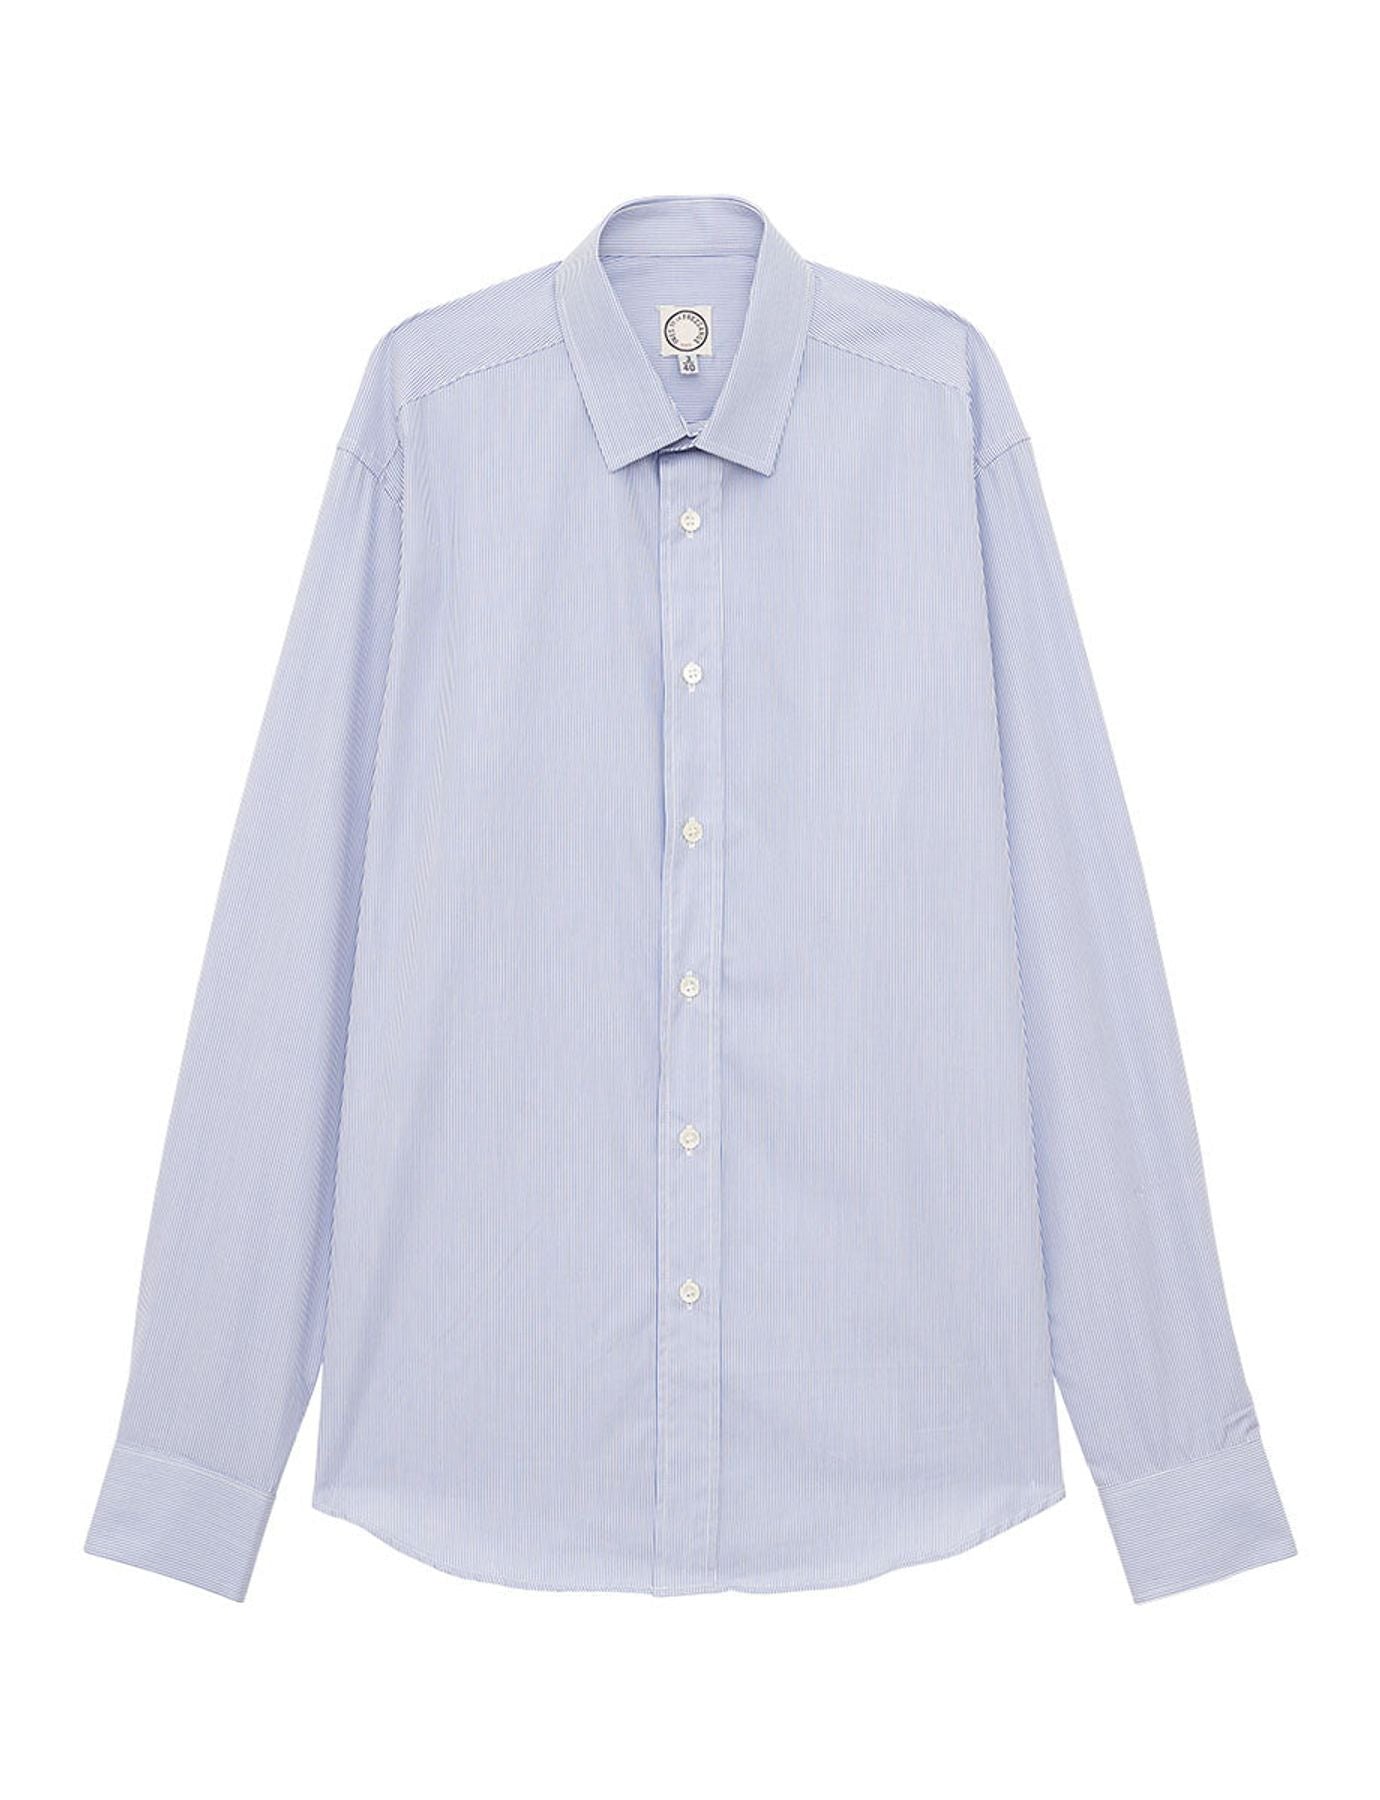 shirt-for-men-olivier-blue-white-stripes